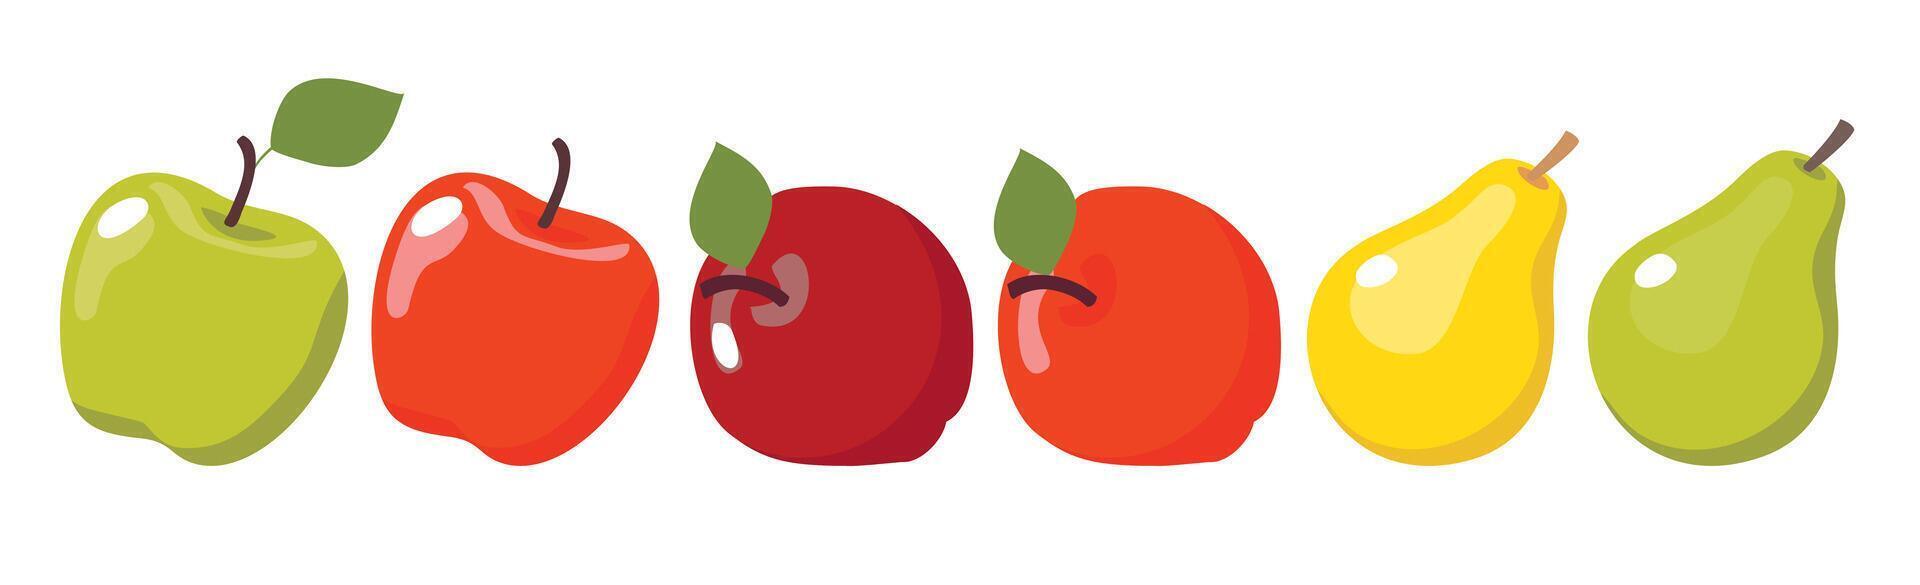 en uppsättning av illustrationer av päron och äpplen av olika former och färger. vektor ClipArt.